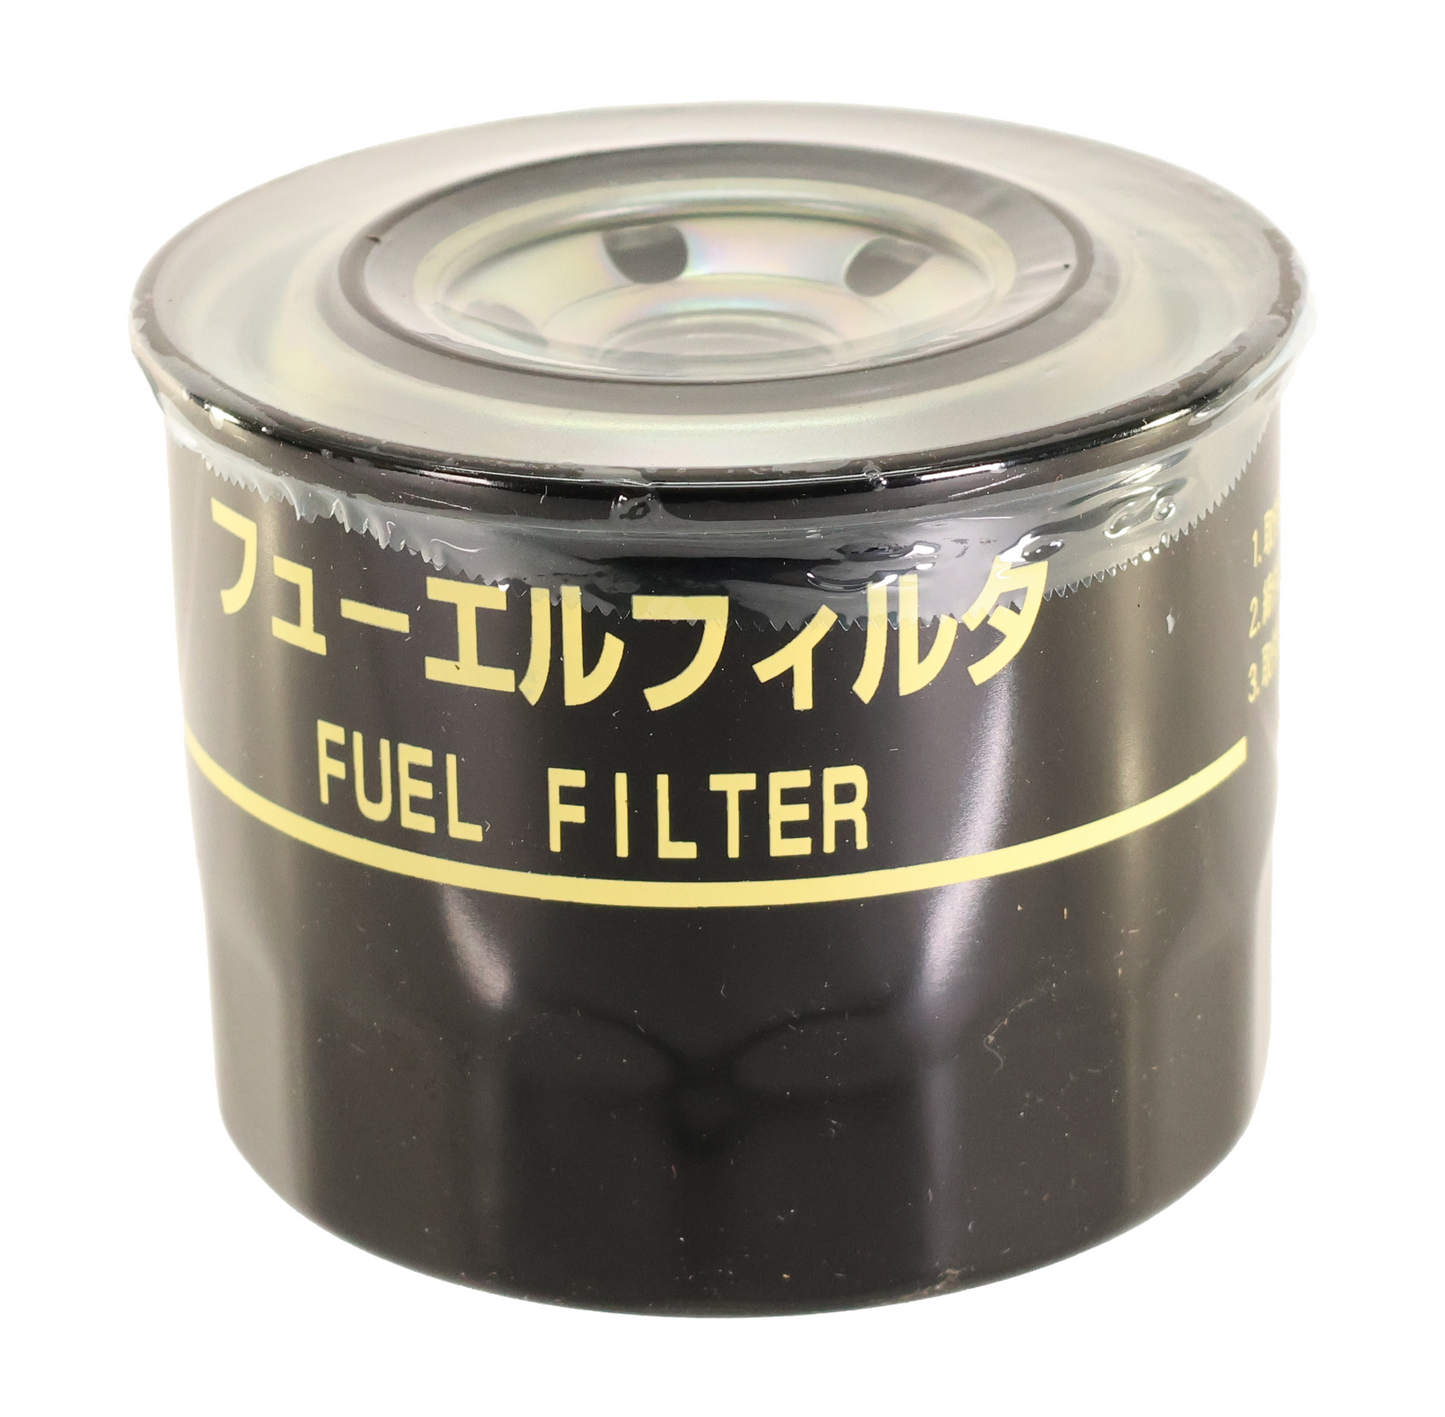 John Deere Original Equipment Fuel Filter - MIU801267